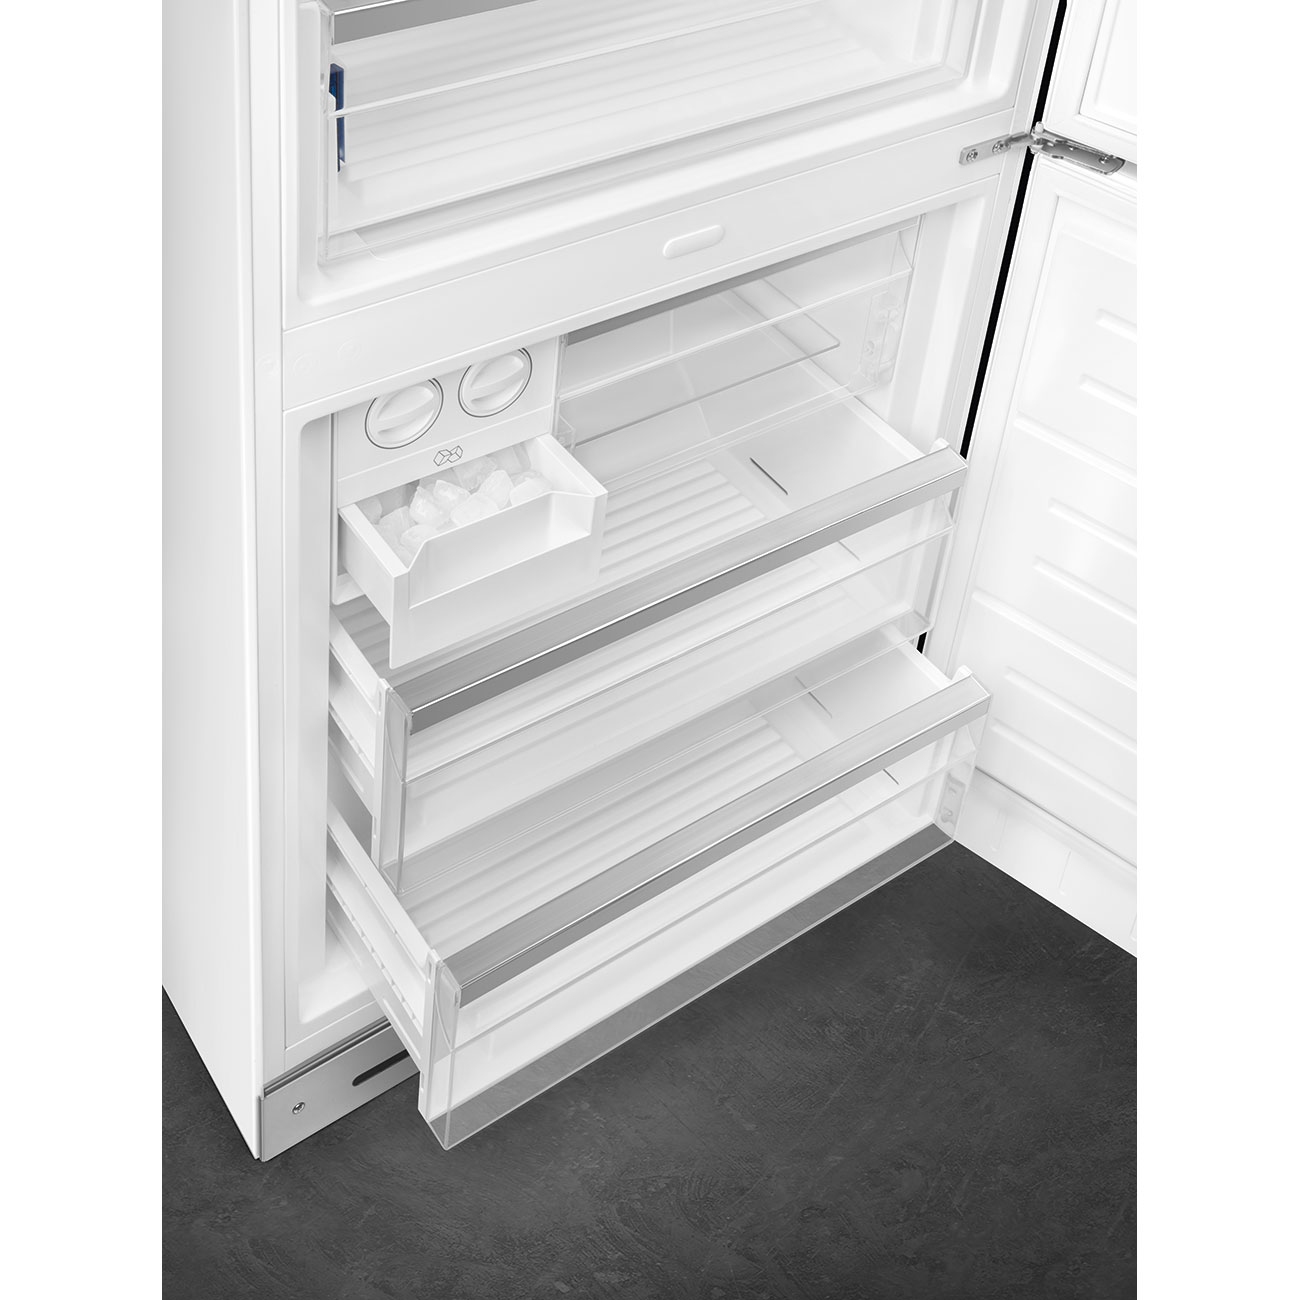 Weiß Retro-Kühlschränke von Smeg_10